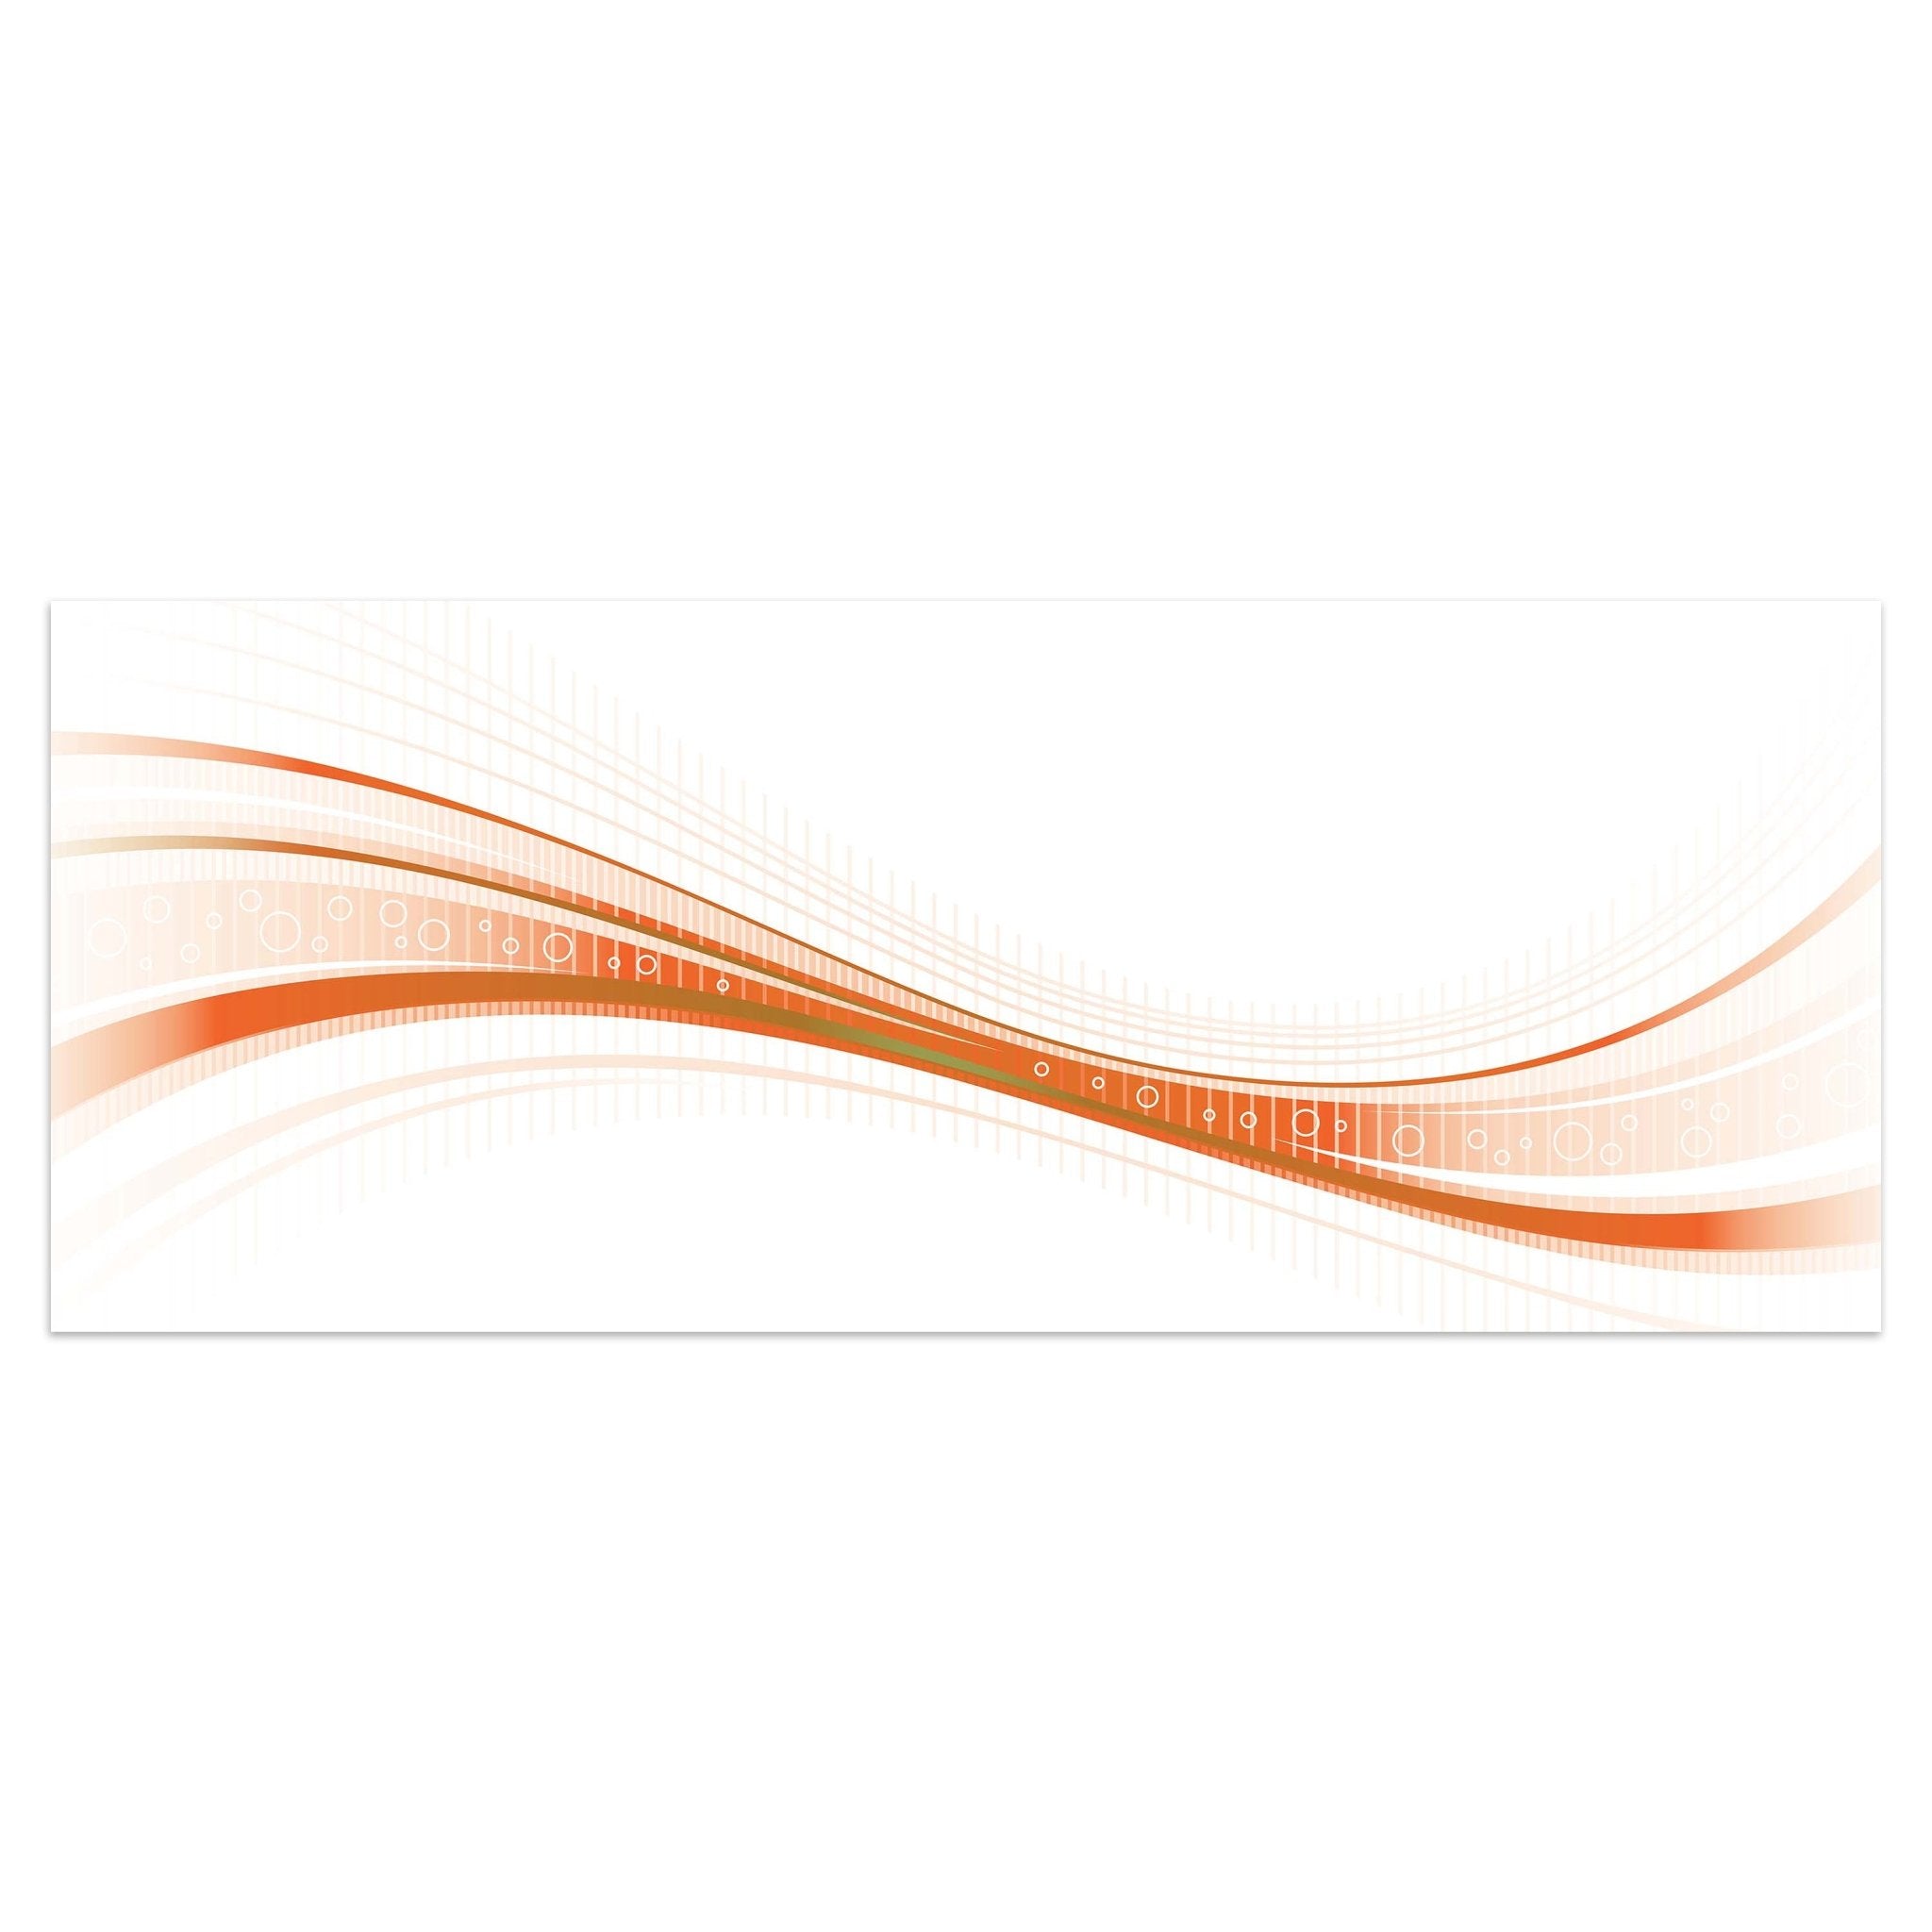 Leinwandbild Orangene Welle M0315 kaufen - Bild 1